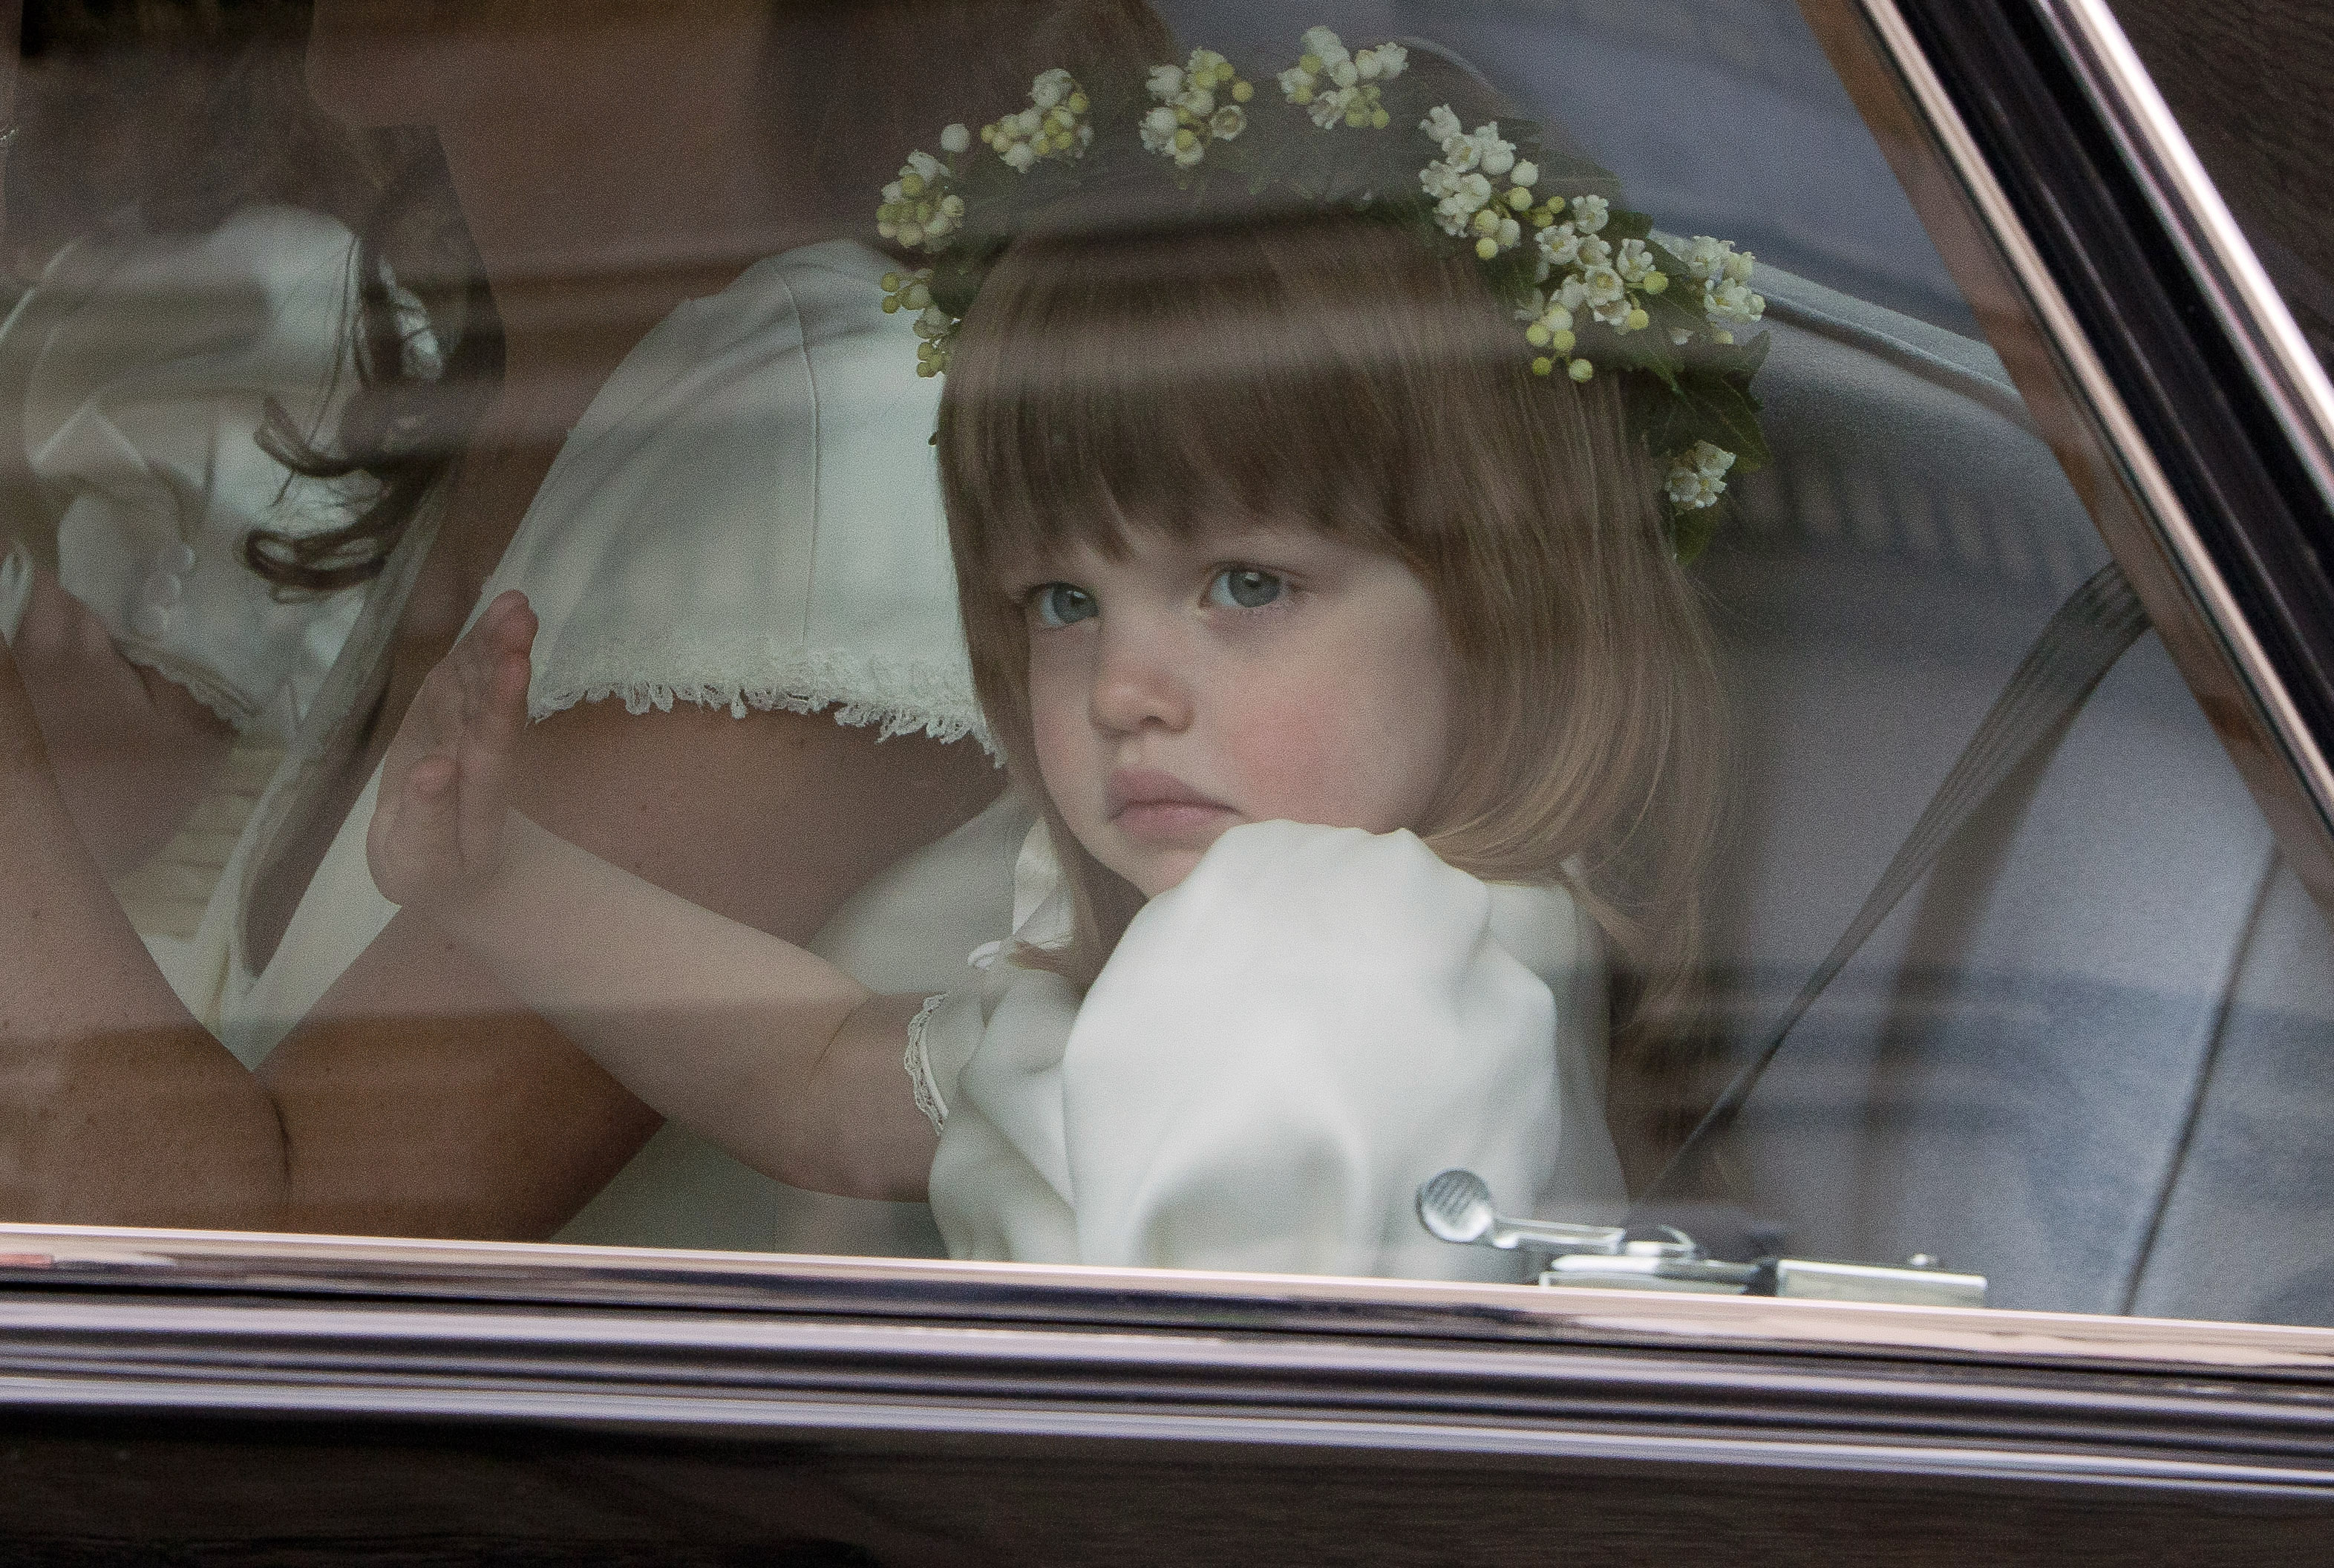 La demoiselle d'honneur Eliza Lopes, se rendant à l'abbaye de Westminster avant le mariage royal entre le prince William et Catherine Middleton à Londres, le 29 avril 2011. | Source : Getty Images